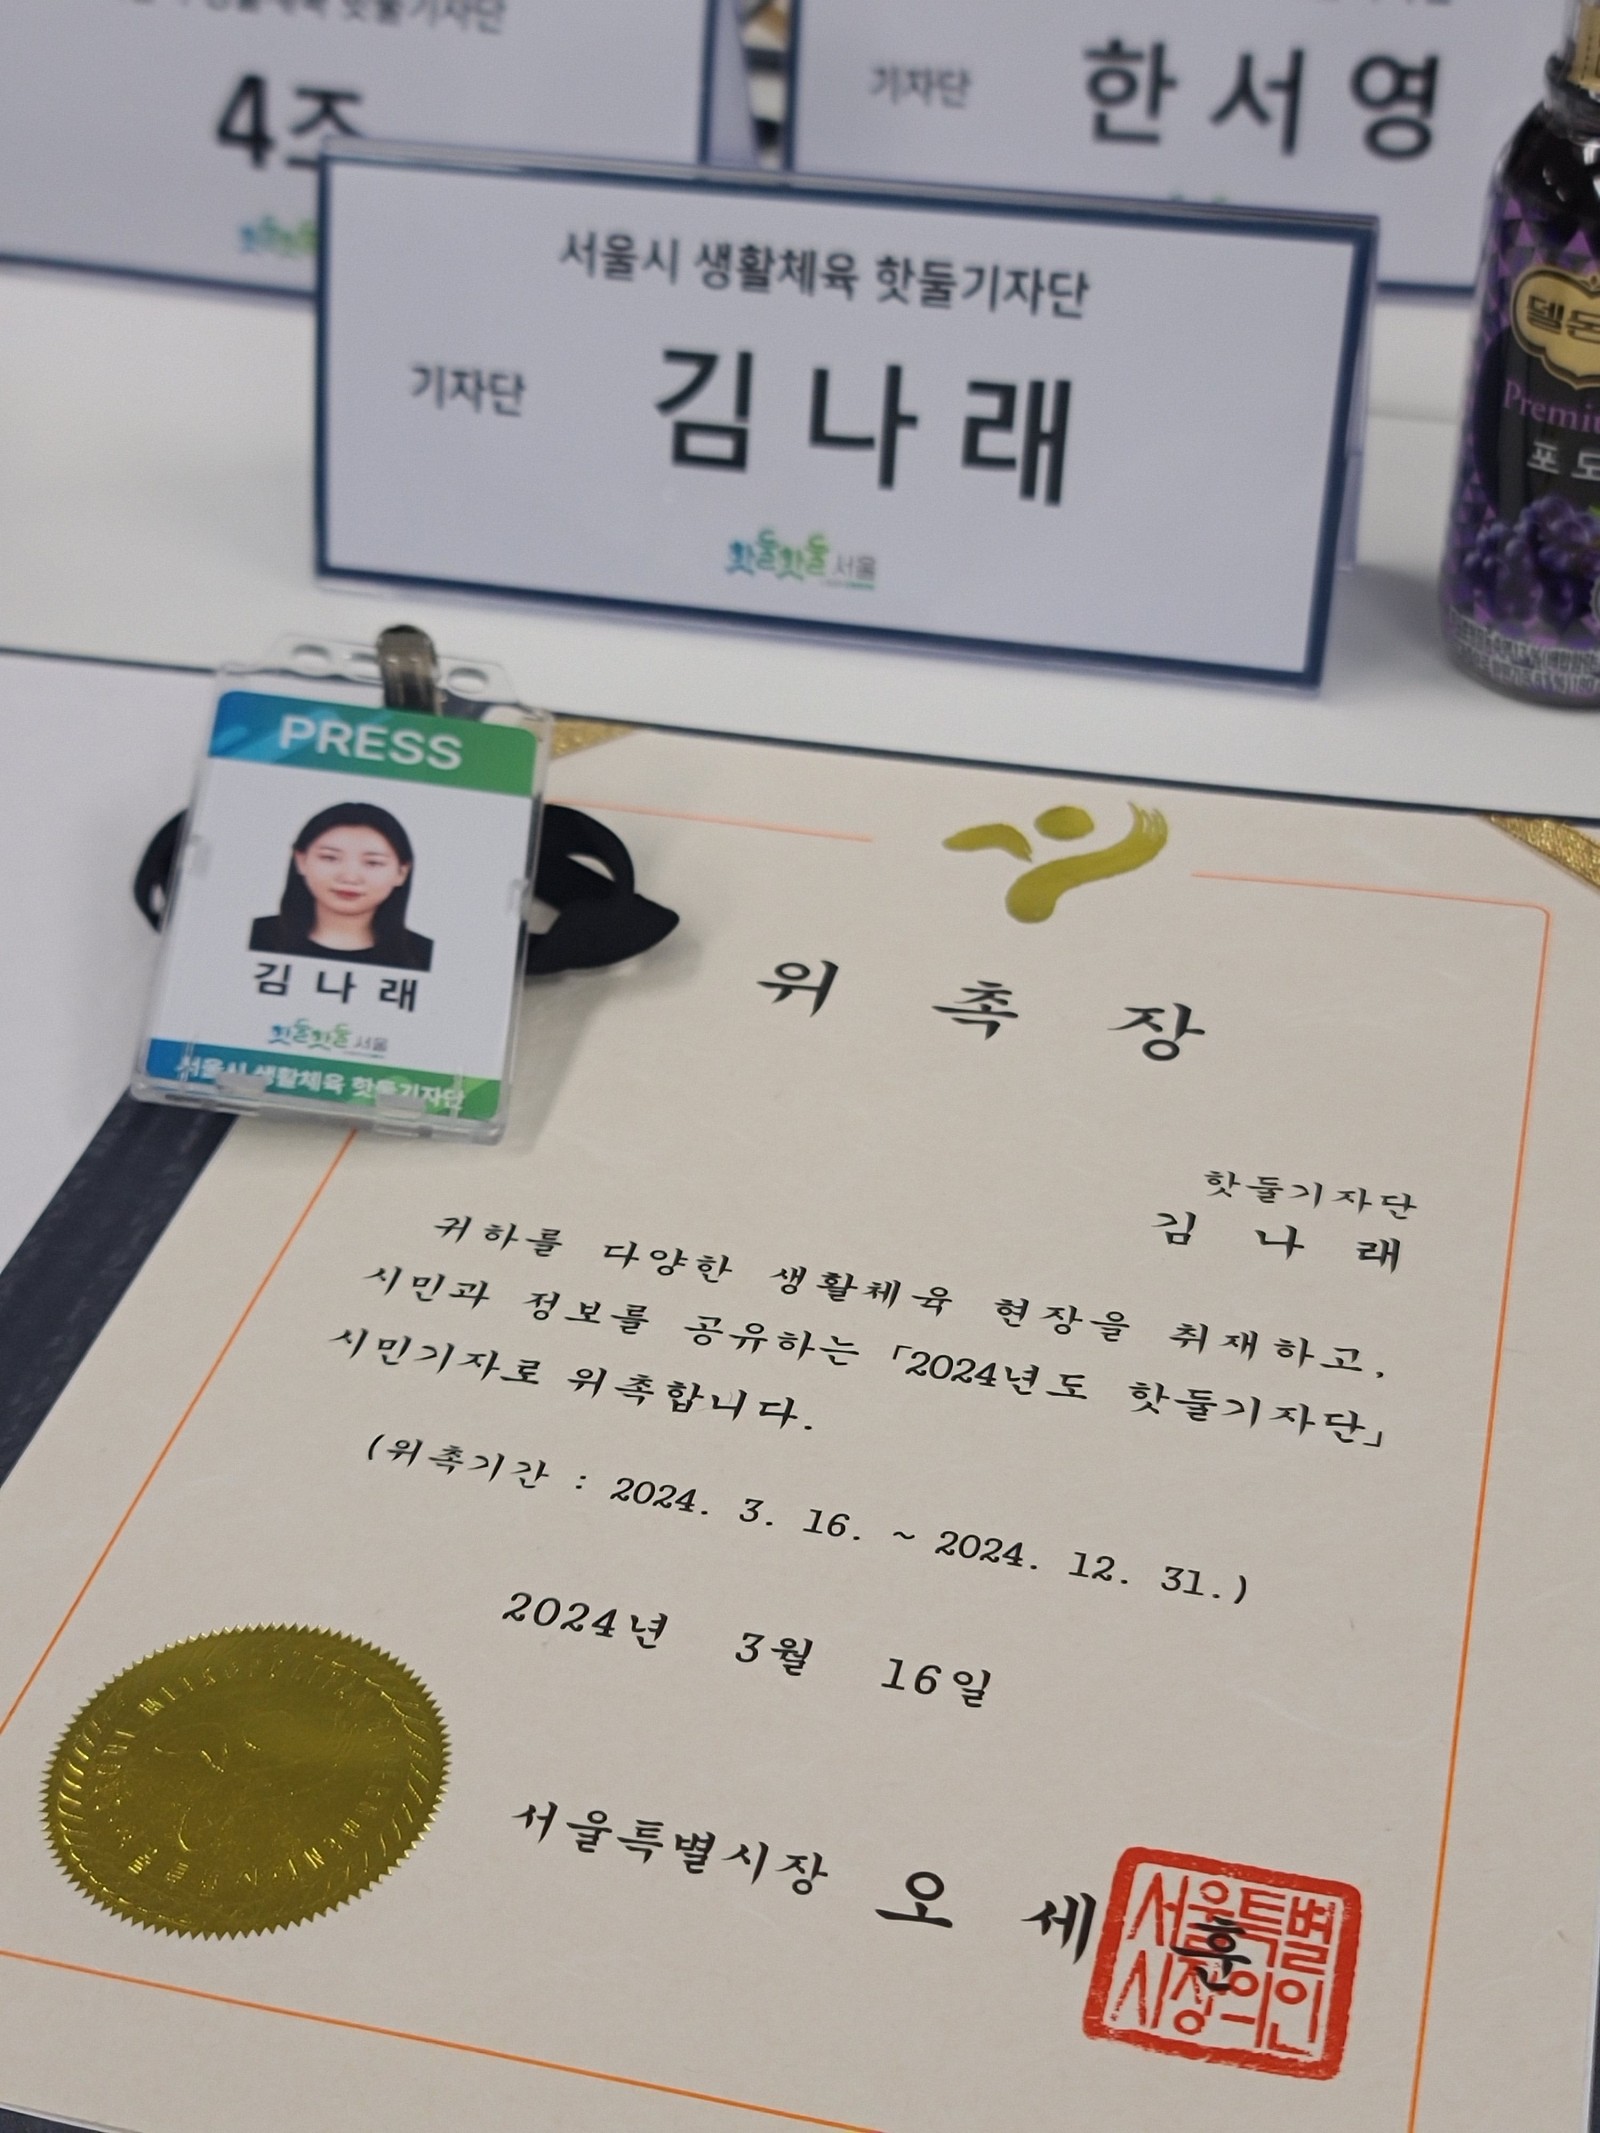 안녕하세요!
2024년 서울시 생활체육 핫둘기자단 6기로 활동하게 된 김나래입니다.
